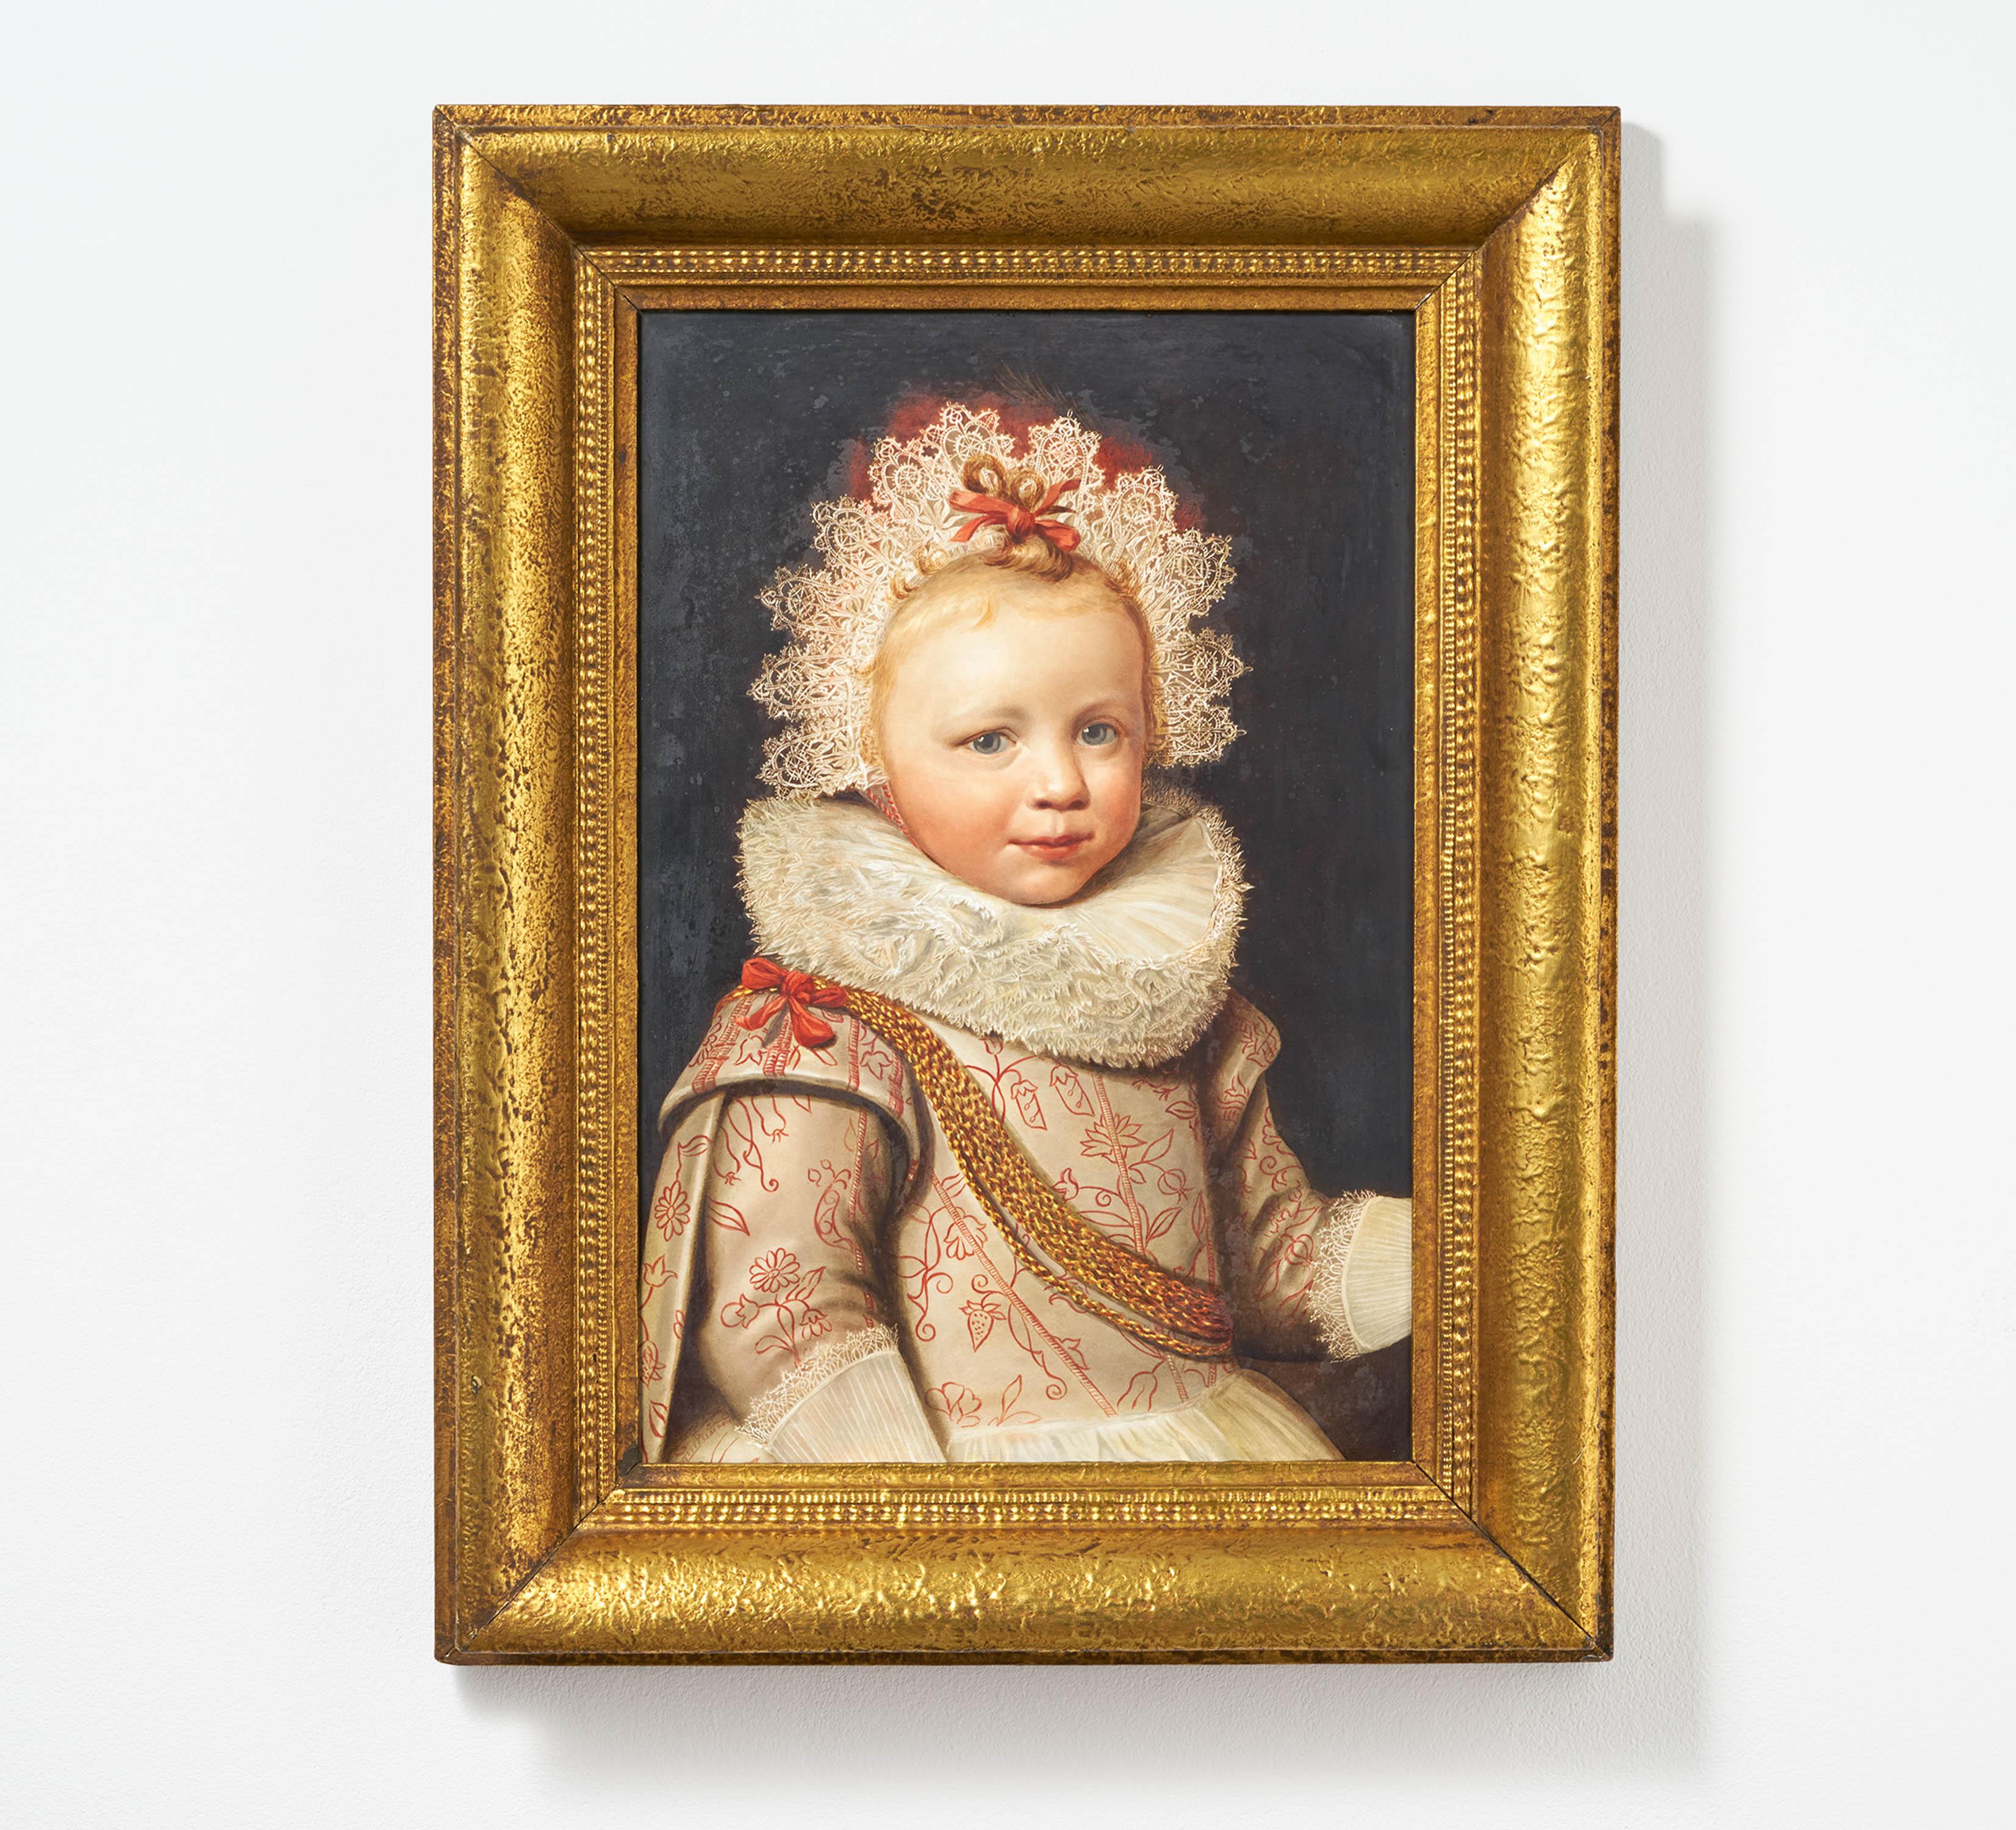 Large porcelain painting with child portrait